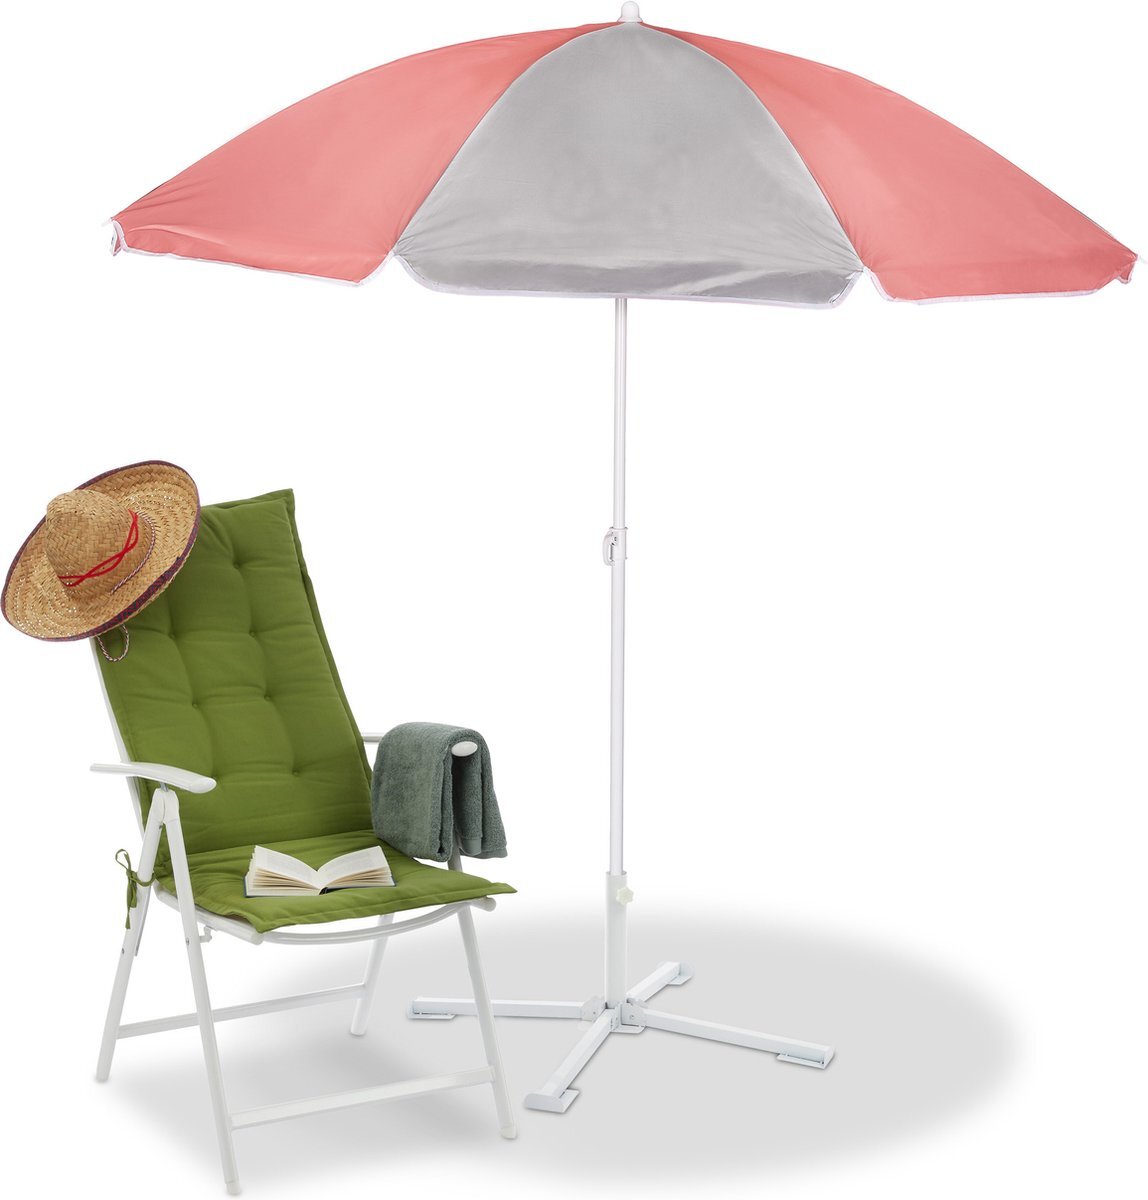 Relaxdays parasol 160 cm - strandparasol lichtgewicht - kantelbaar - kleine stokparasol